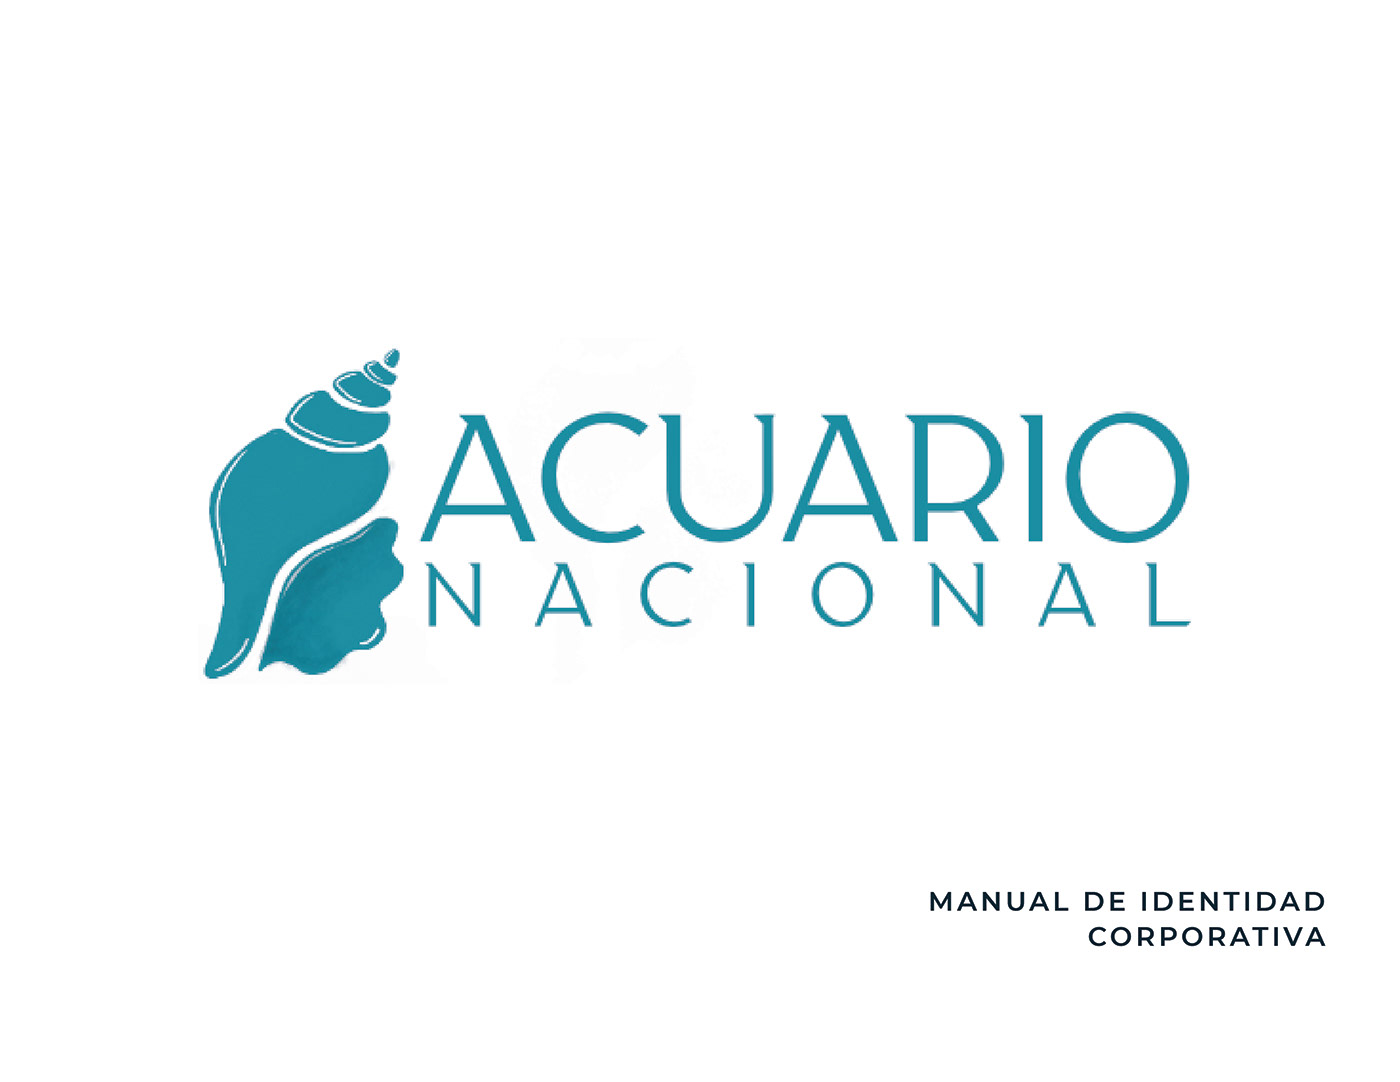 acuarionacional dominican dominicanrepublic rebranding republicadominicana